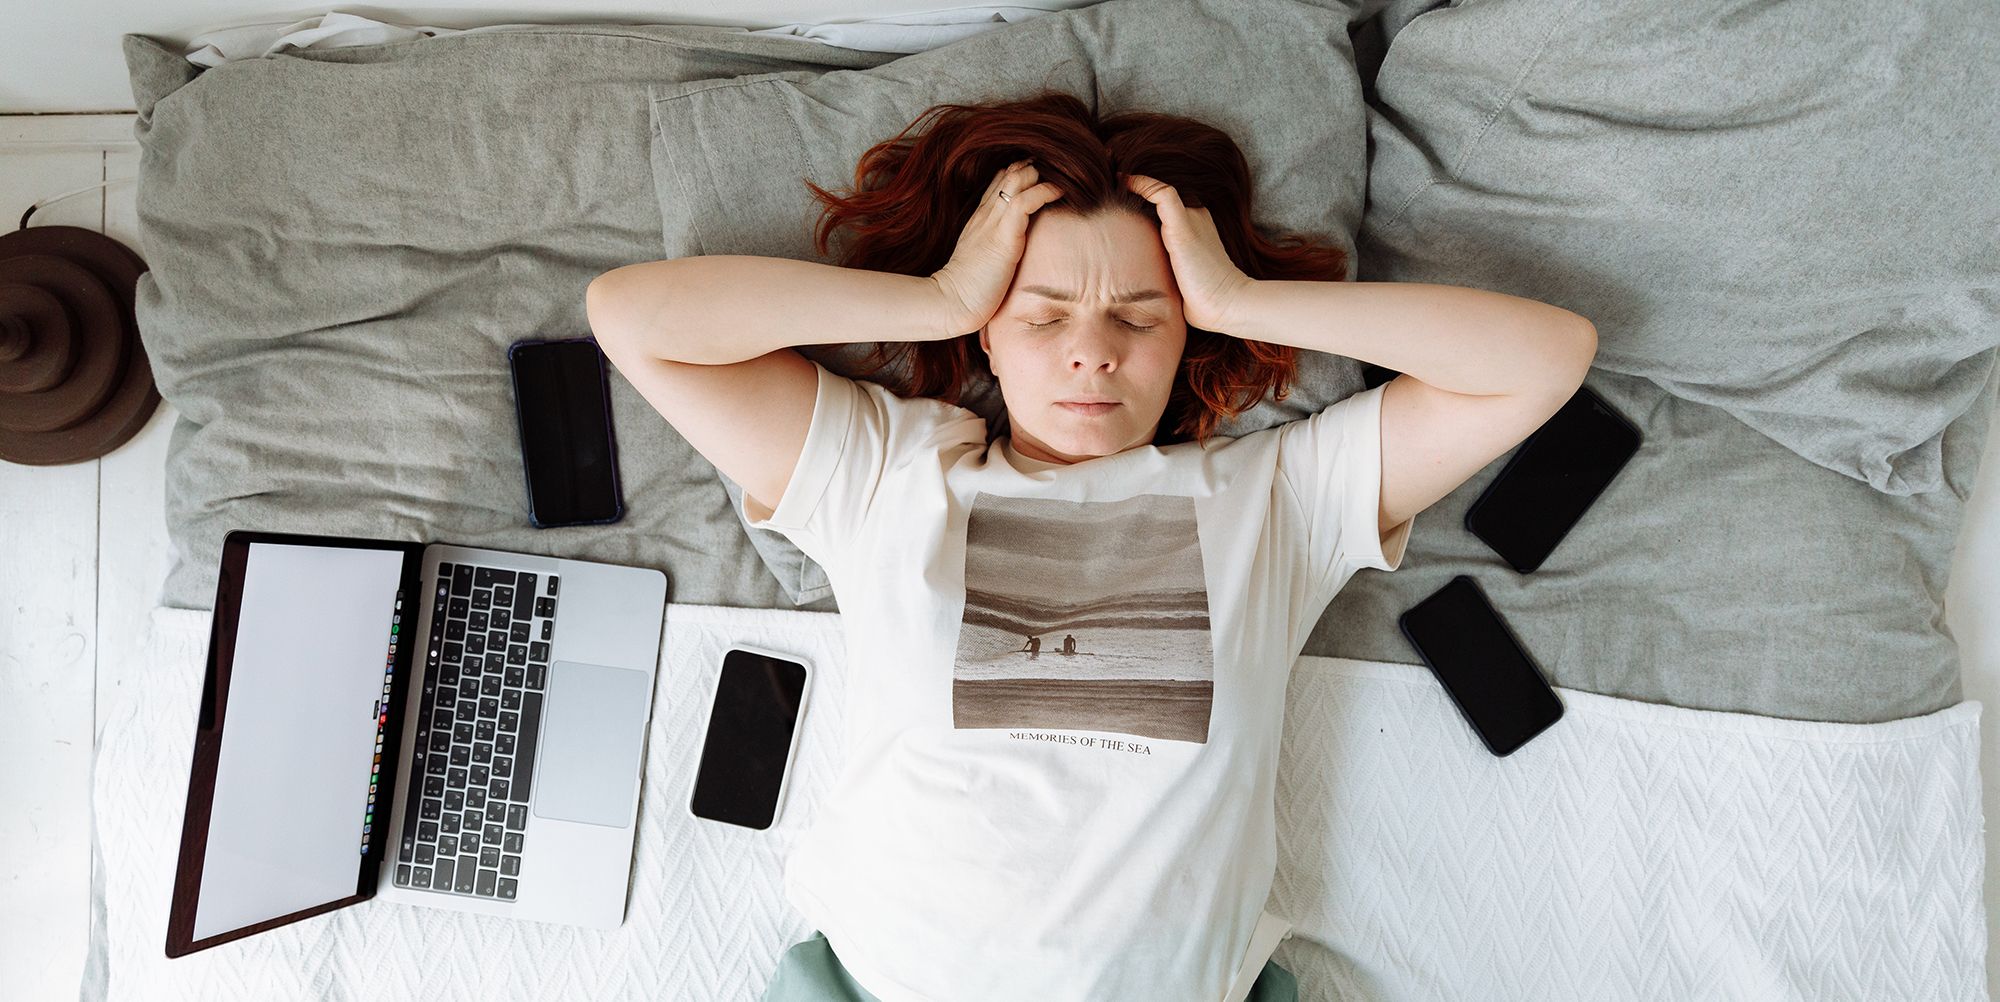 노트북으로 좌절감을 느끼며 침대에 누워 있는 여성